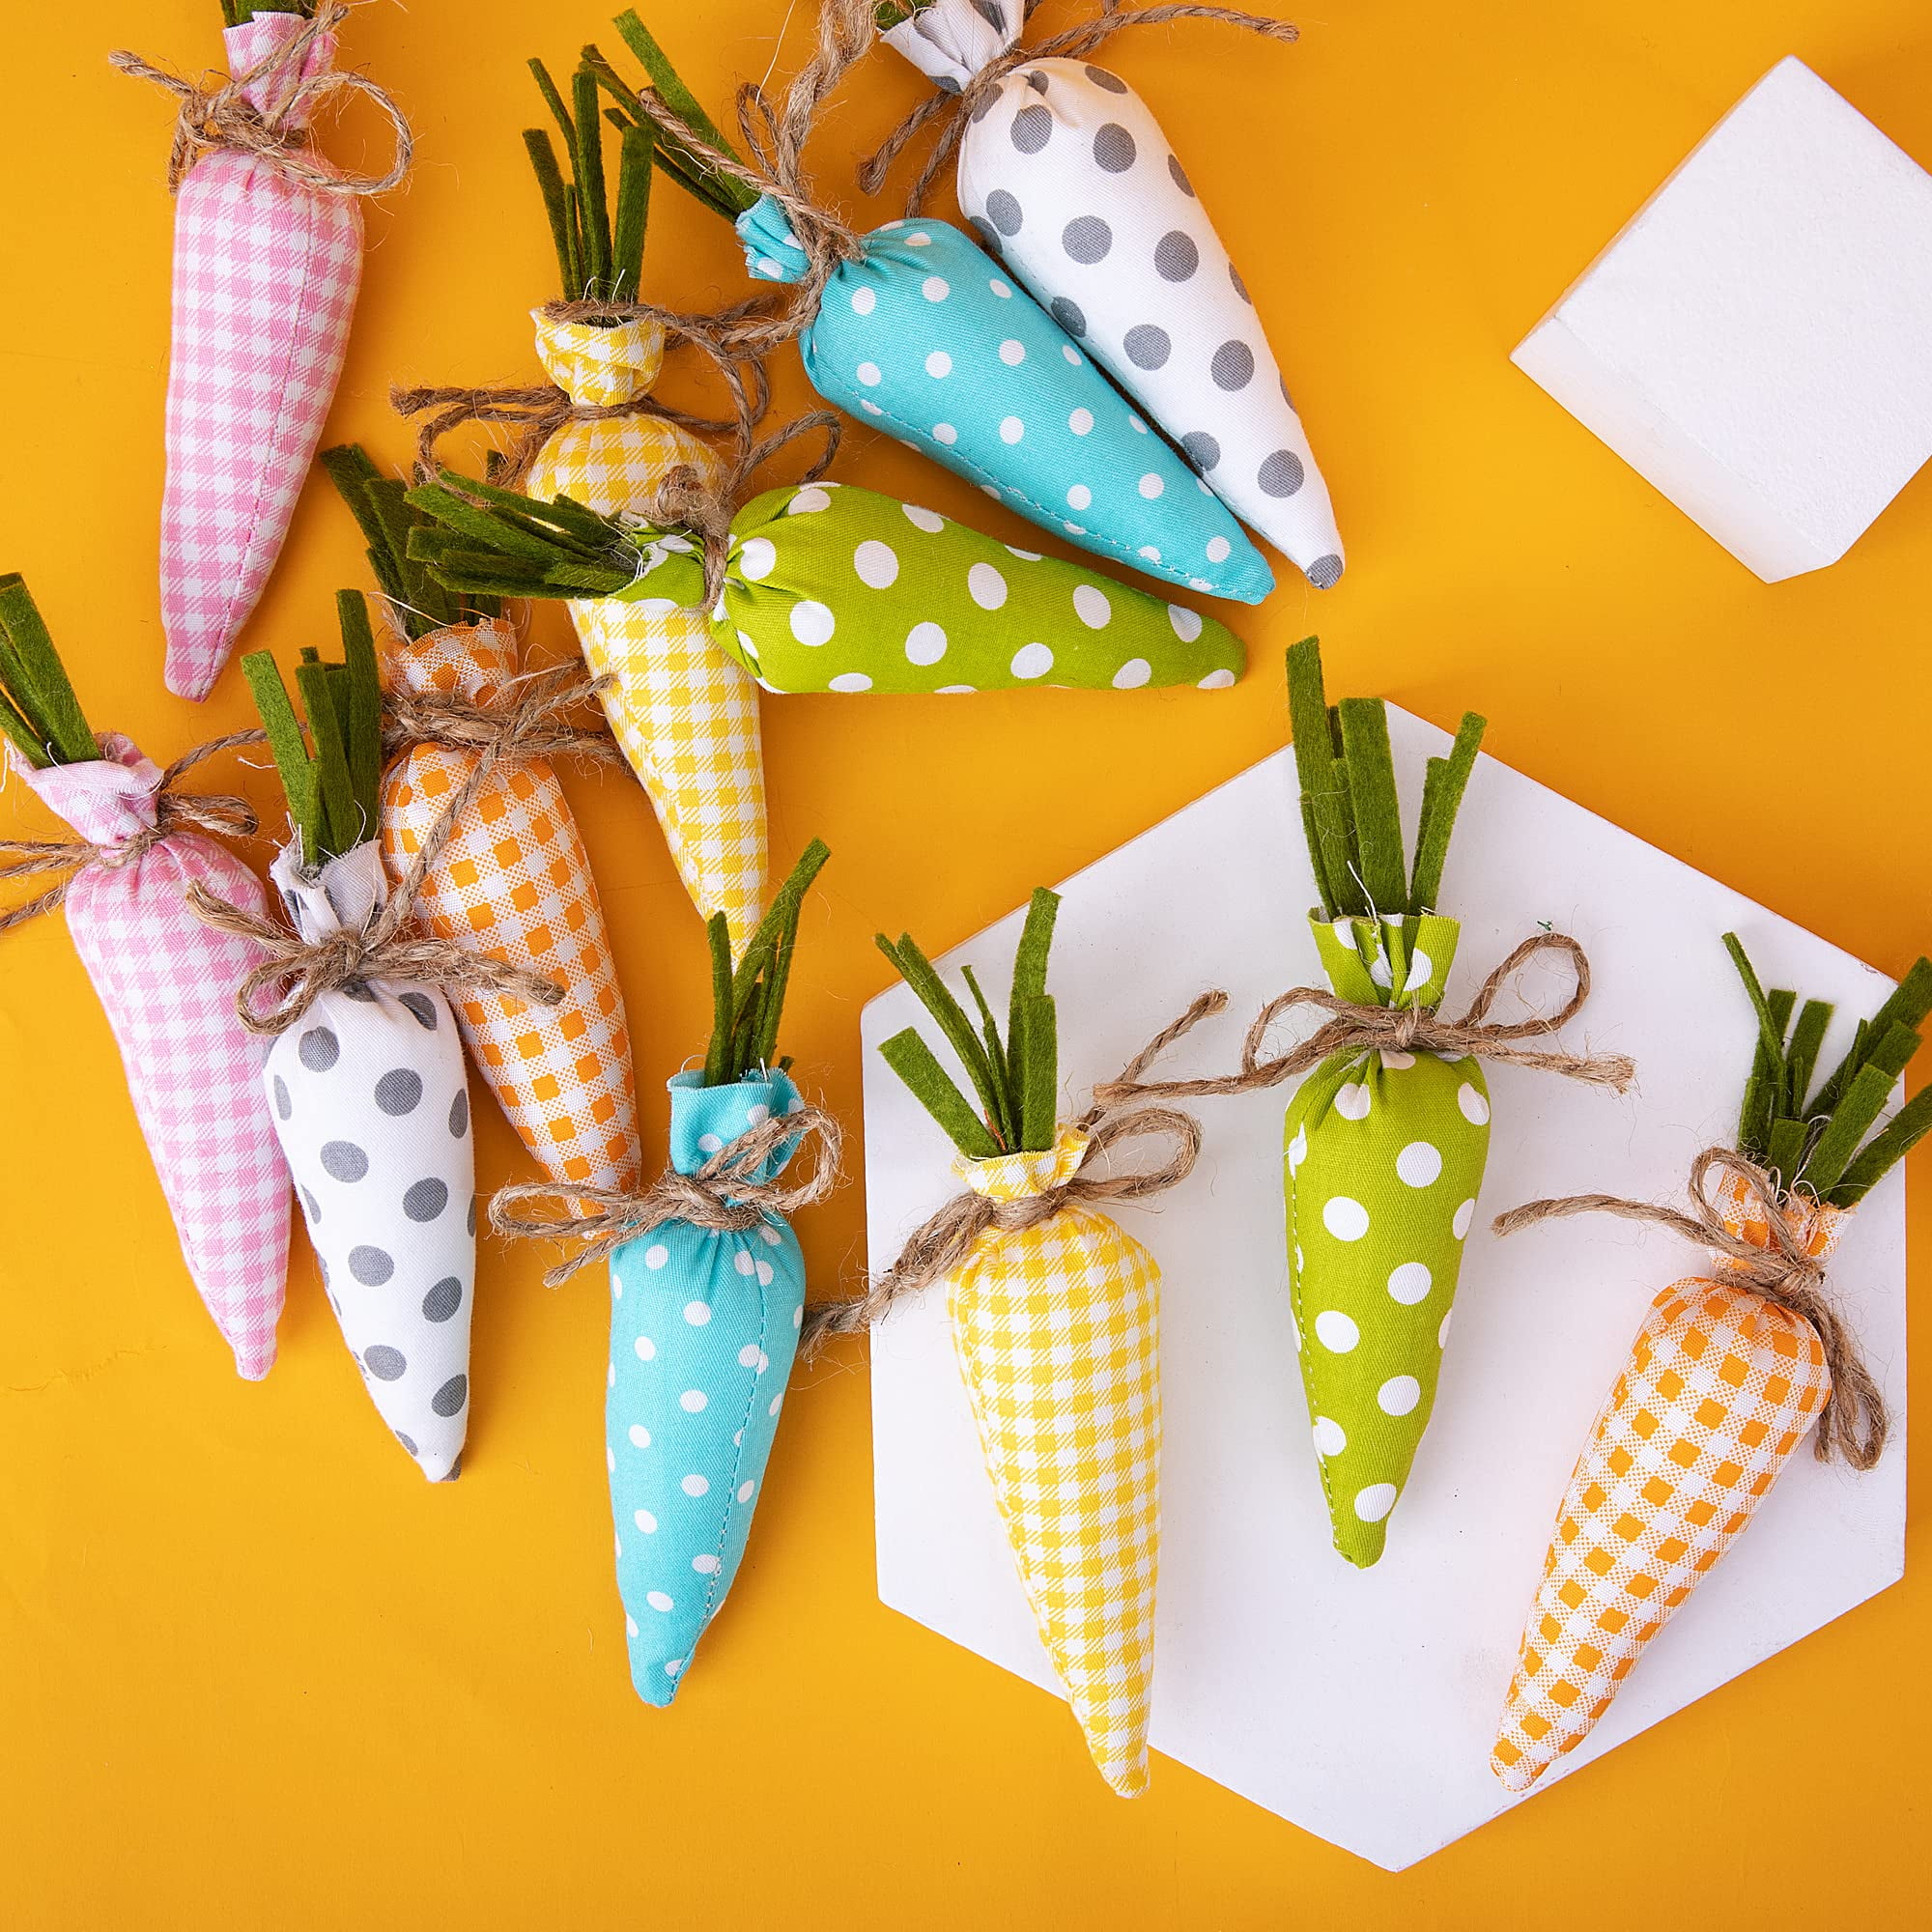 Clothespin Carrots (DIY Easter Decor) - The Happy Farmhouse